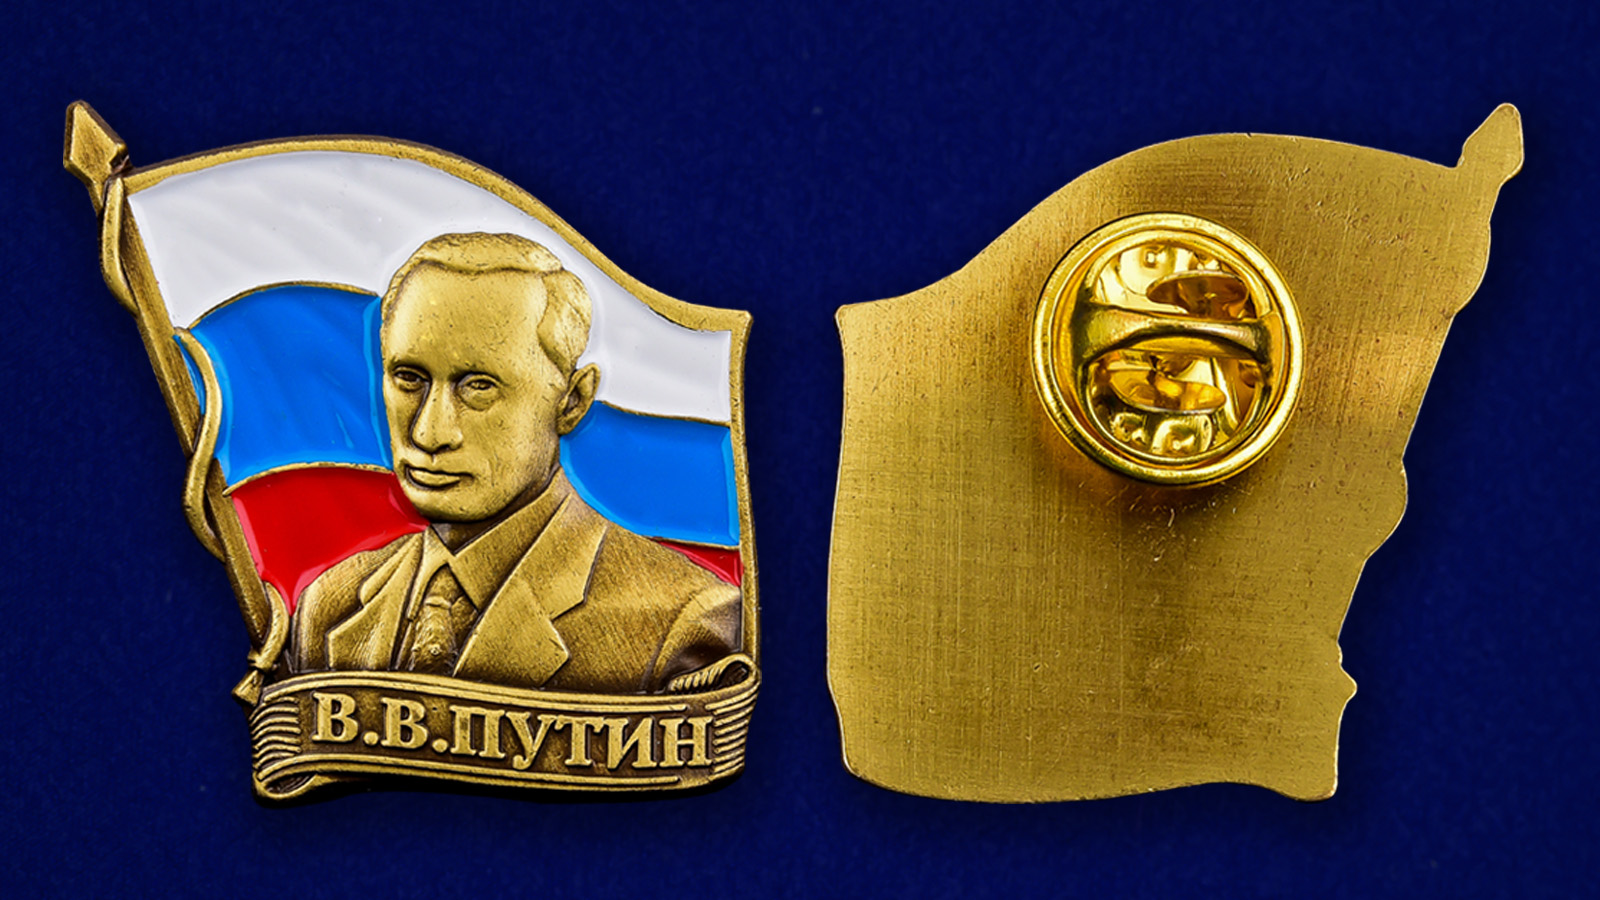 Купить значок с портретом Путина в Военпро